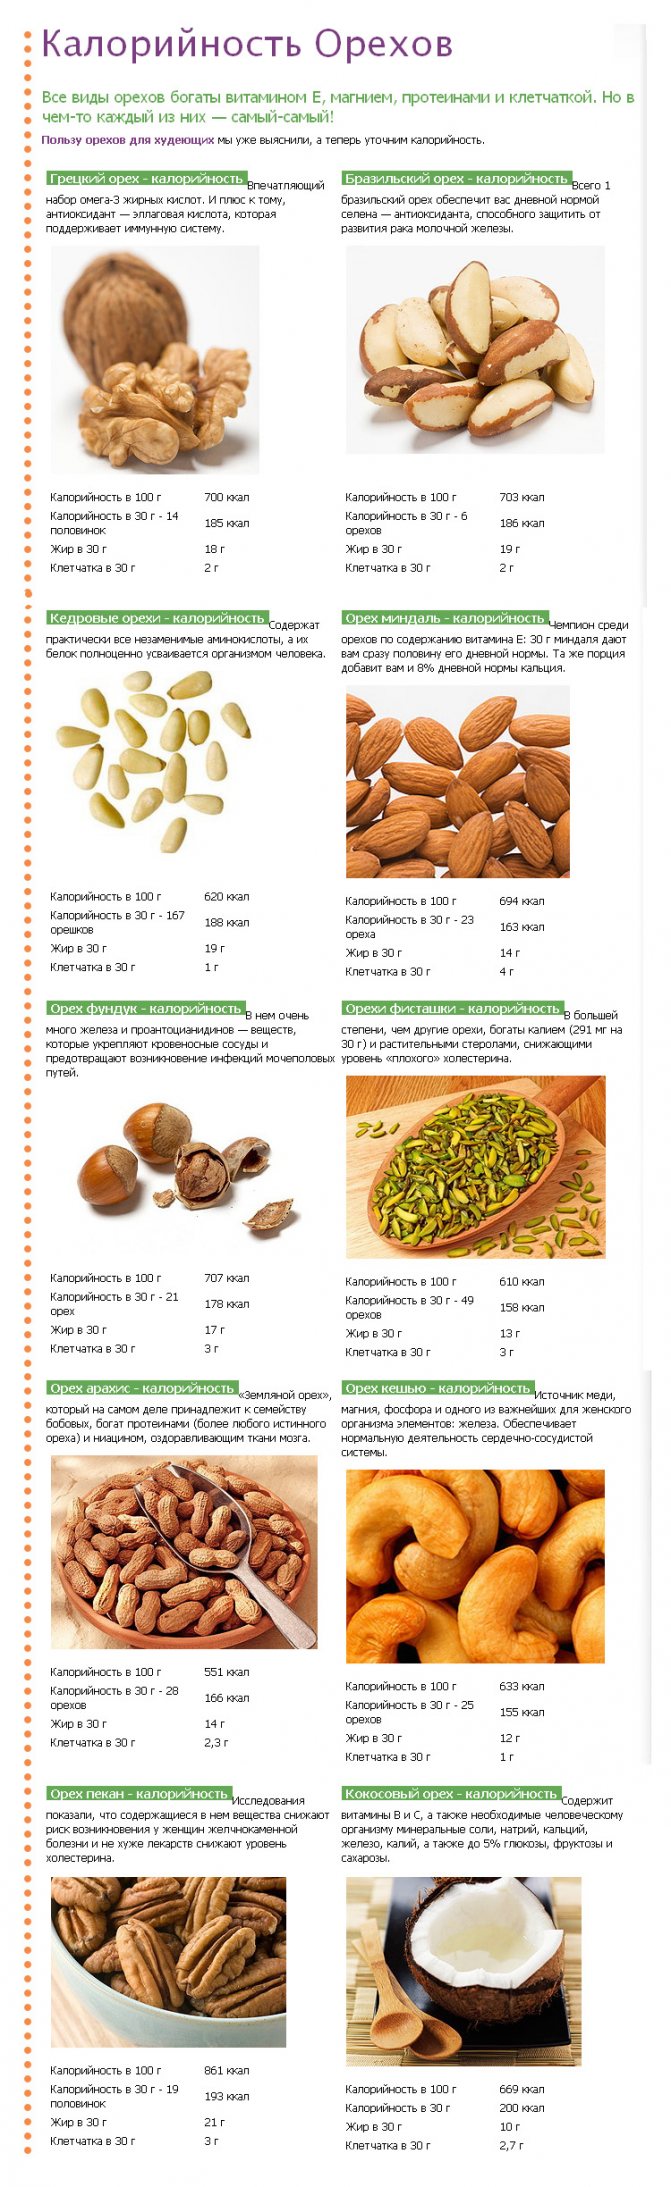 Фундук — описание, полезные свойства и противопоказания, состав, калорийность, выращивание